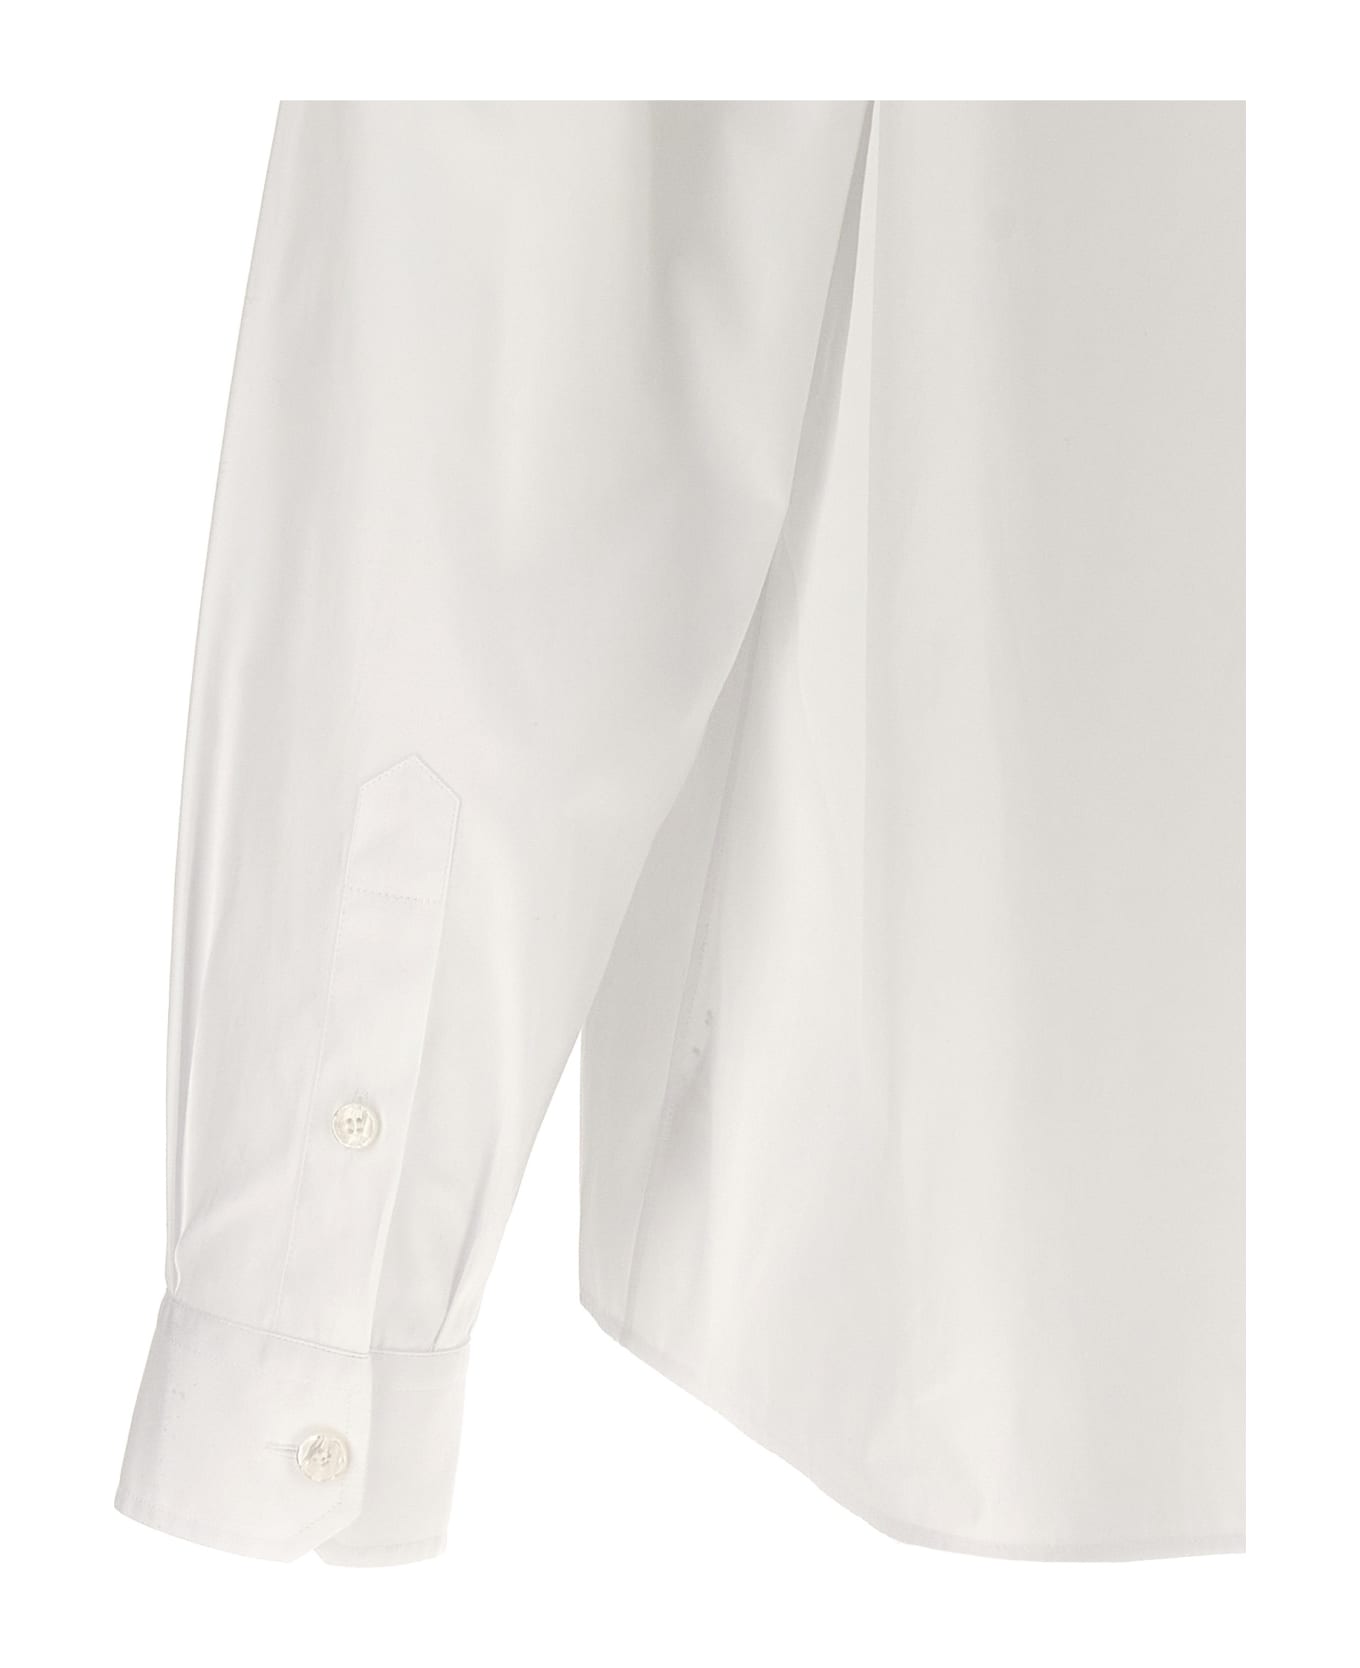 Dolce & Gabbana 'martini' Shirt - White シャツ